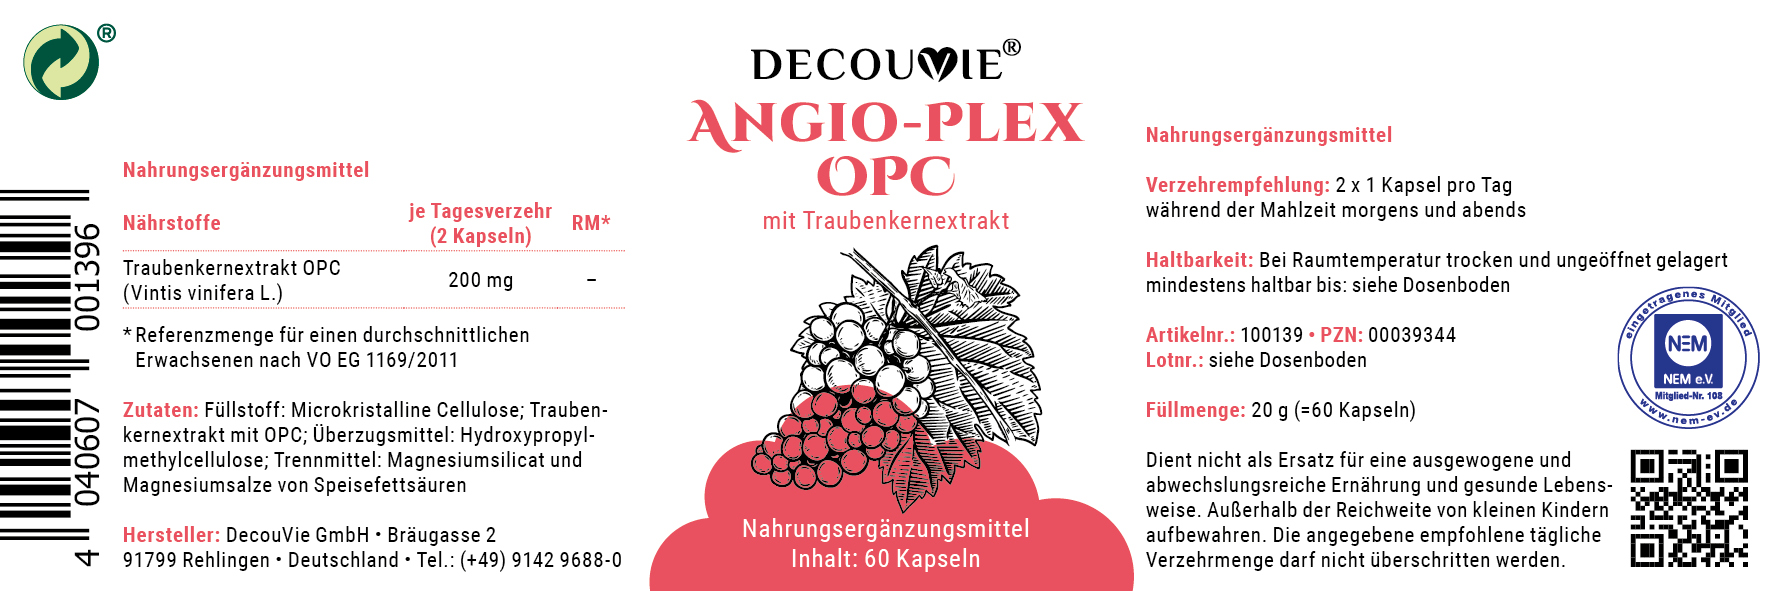 Angio Plex OPC, mit Traubenkernextrakt für Herz, Kreislauf und Gefäße, 60 Kapseln